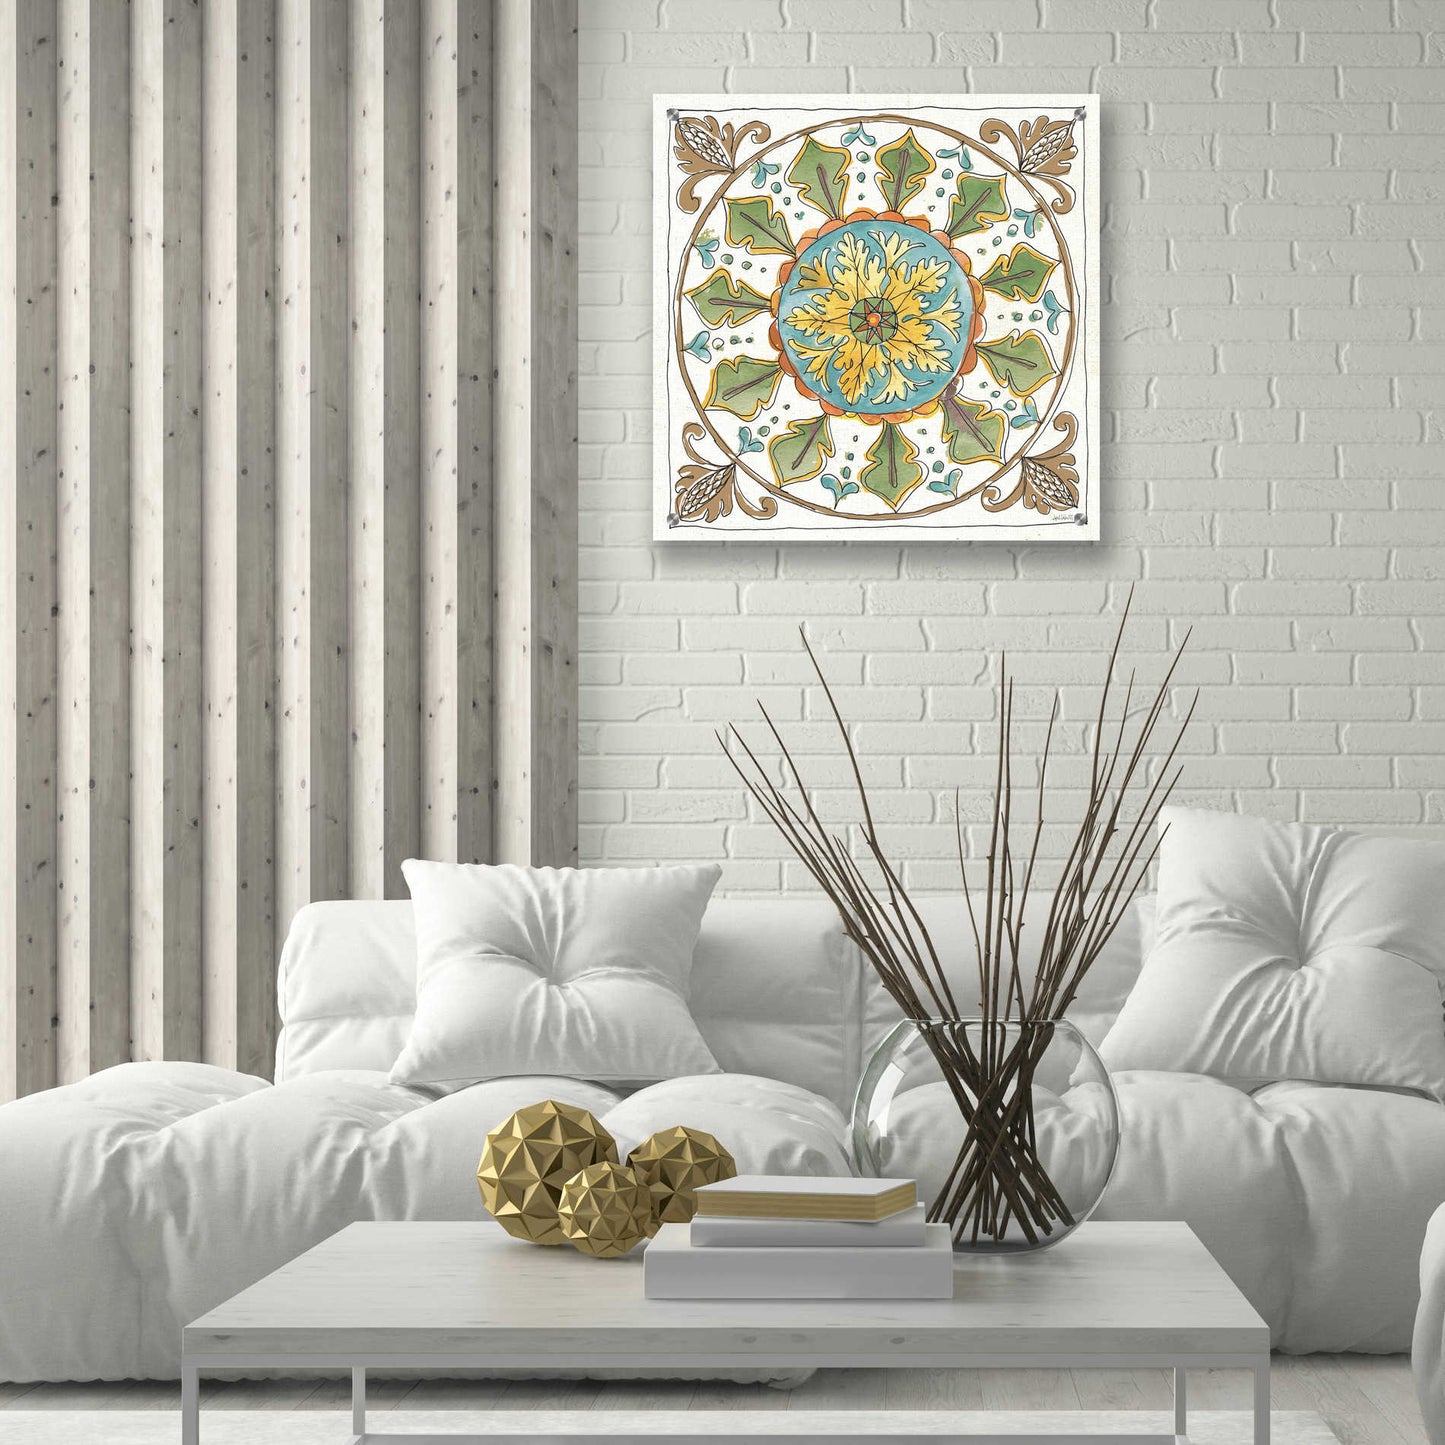 Epic Art 'Tuscan Elegance VII' by Ann Tavoletti, Acrylic Glass Wall Art,24x24